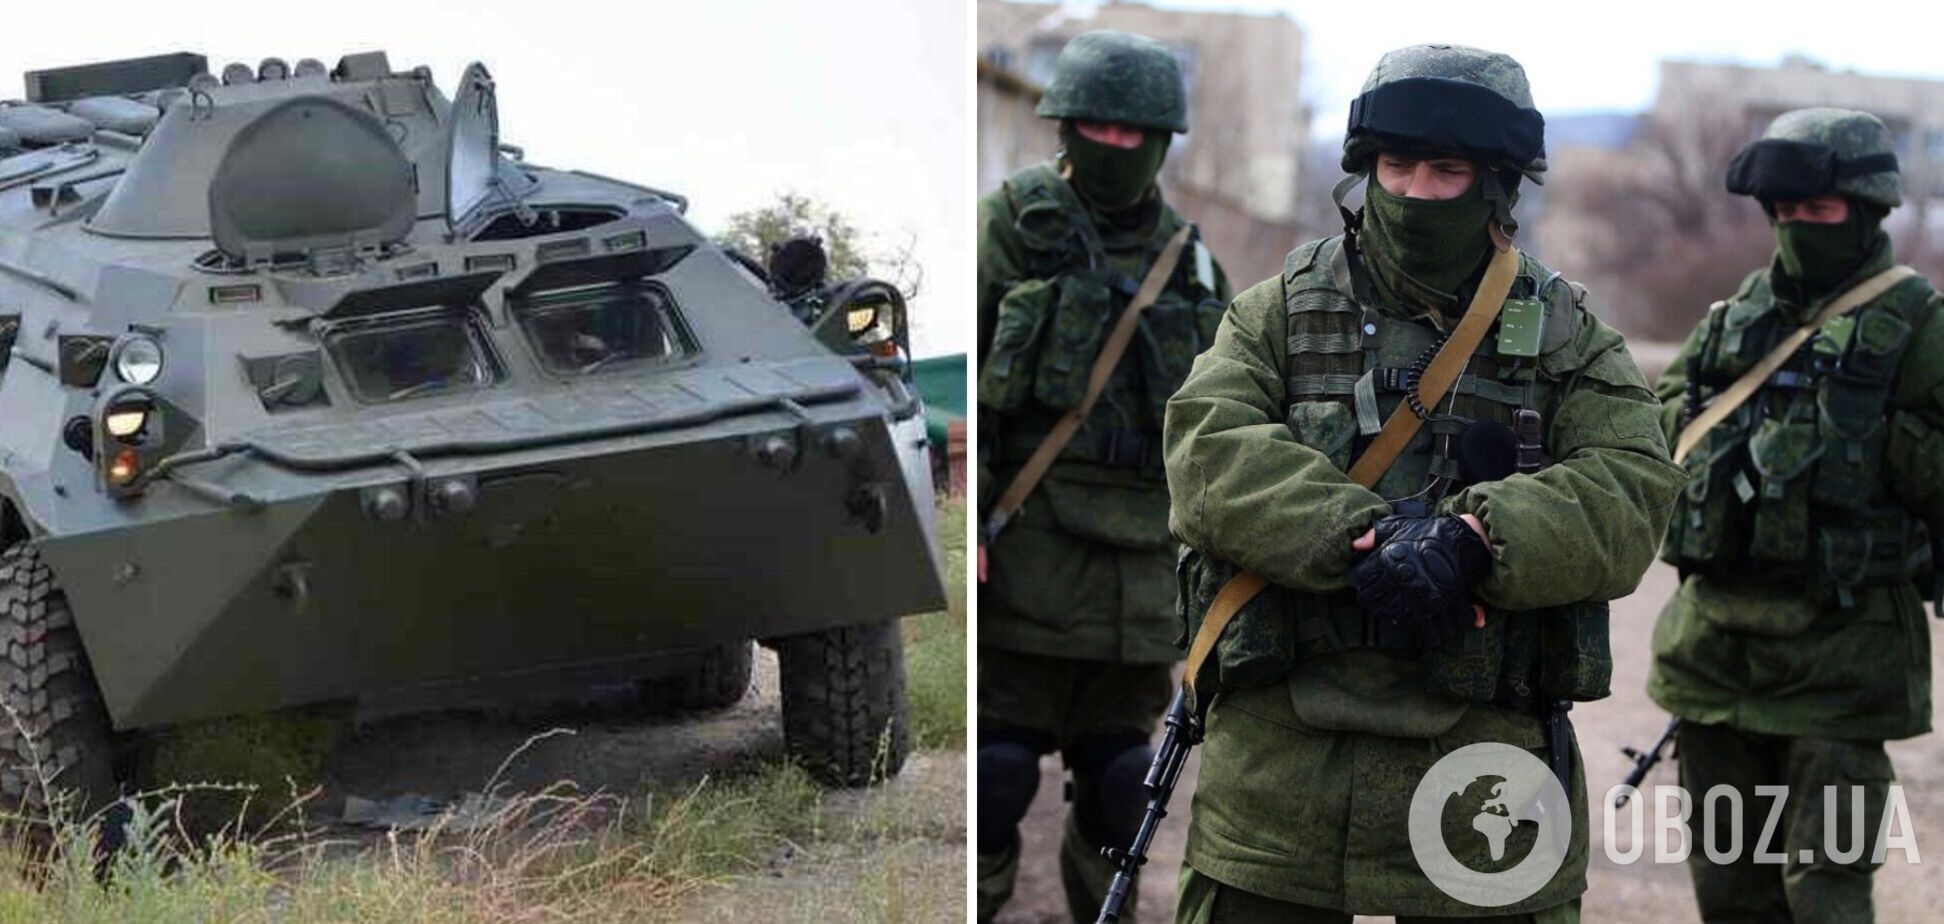 Украинцы угнали БТР у российских оккупантов: в сети появилось видео